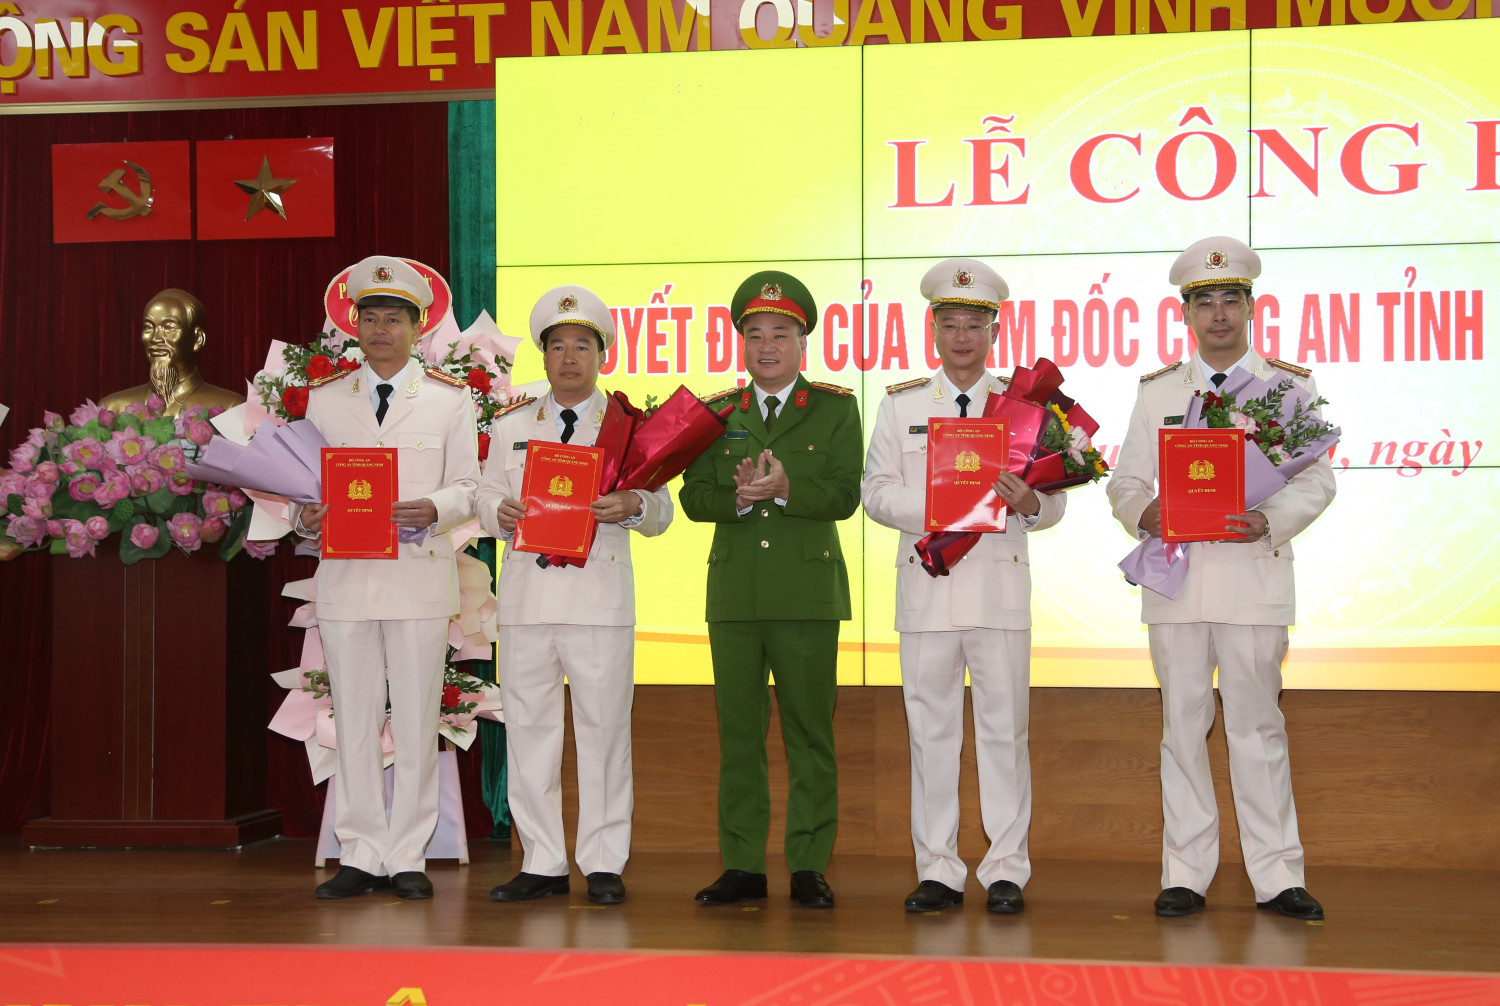 Đại tá Nguyễn Thuận, Phó Giám đốc Công an tỉnh trao quyết định điều động của Giám đốc Công an tỉnh cho 04 đồng chí lãnh đạo các phòng nghiệp vụ